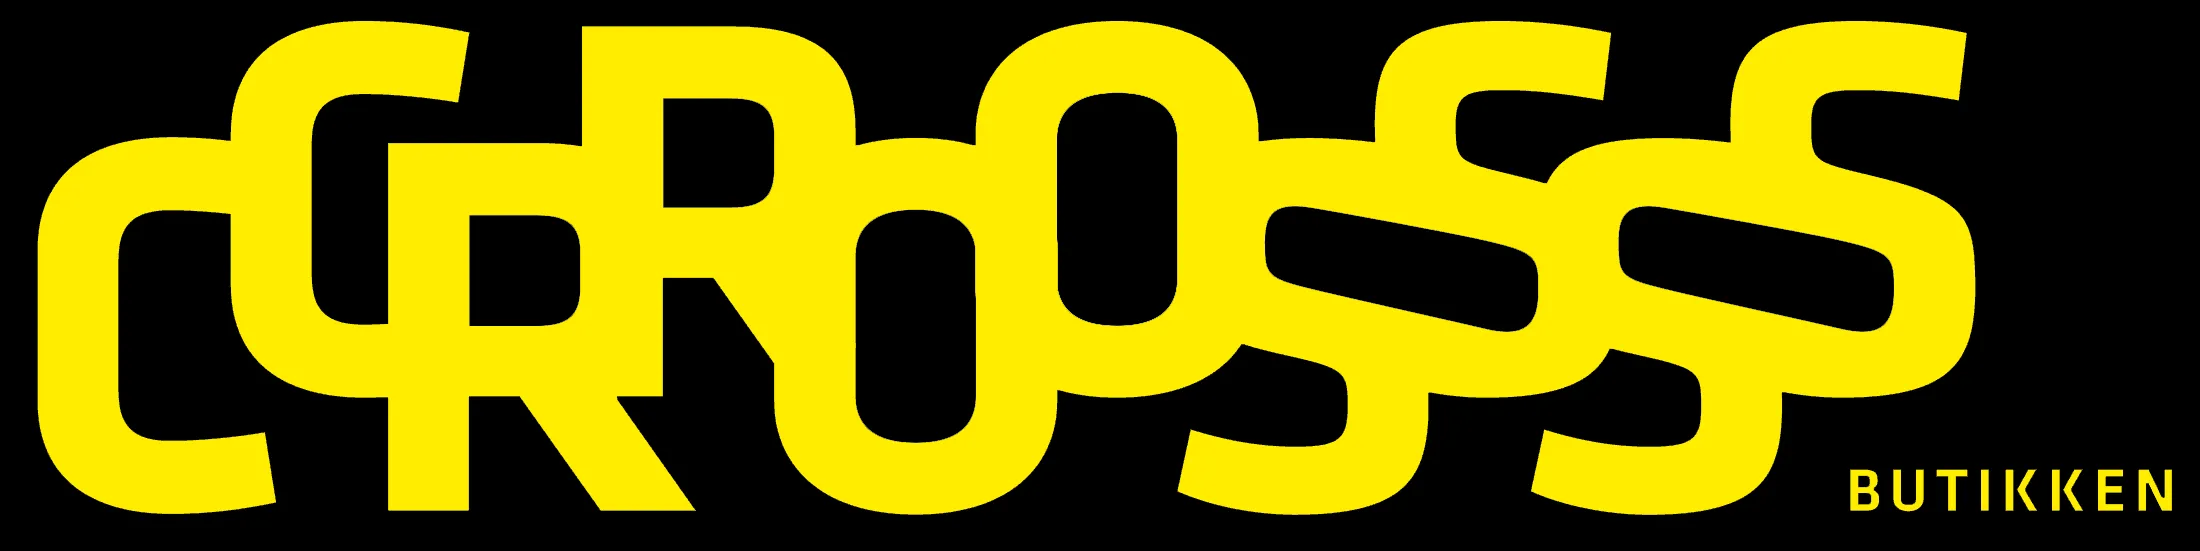 logo gul og svart